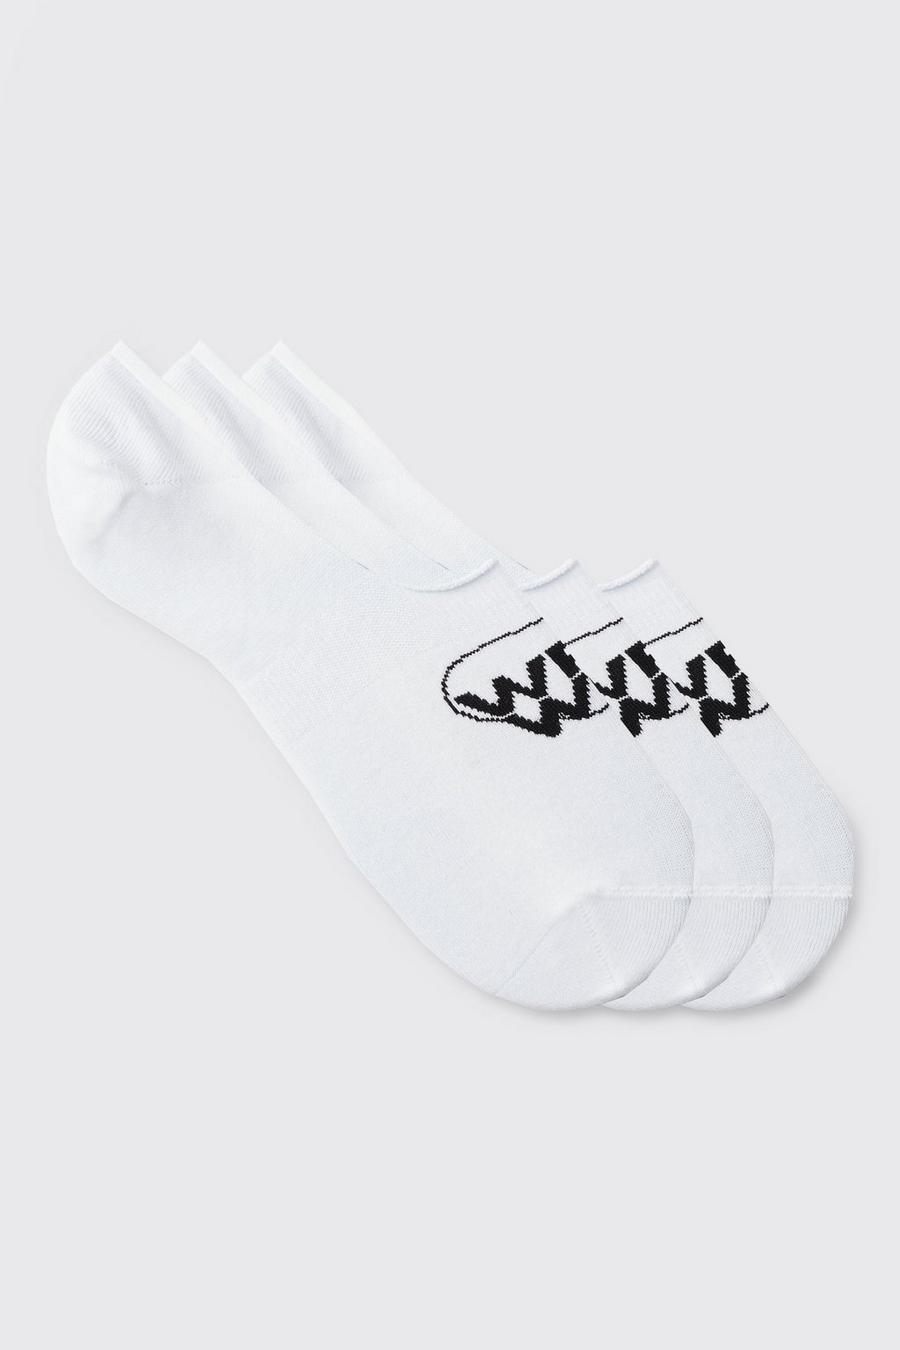 3er-Pack unsichtbare Socken mit Worldwide-Logo, White